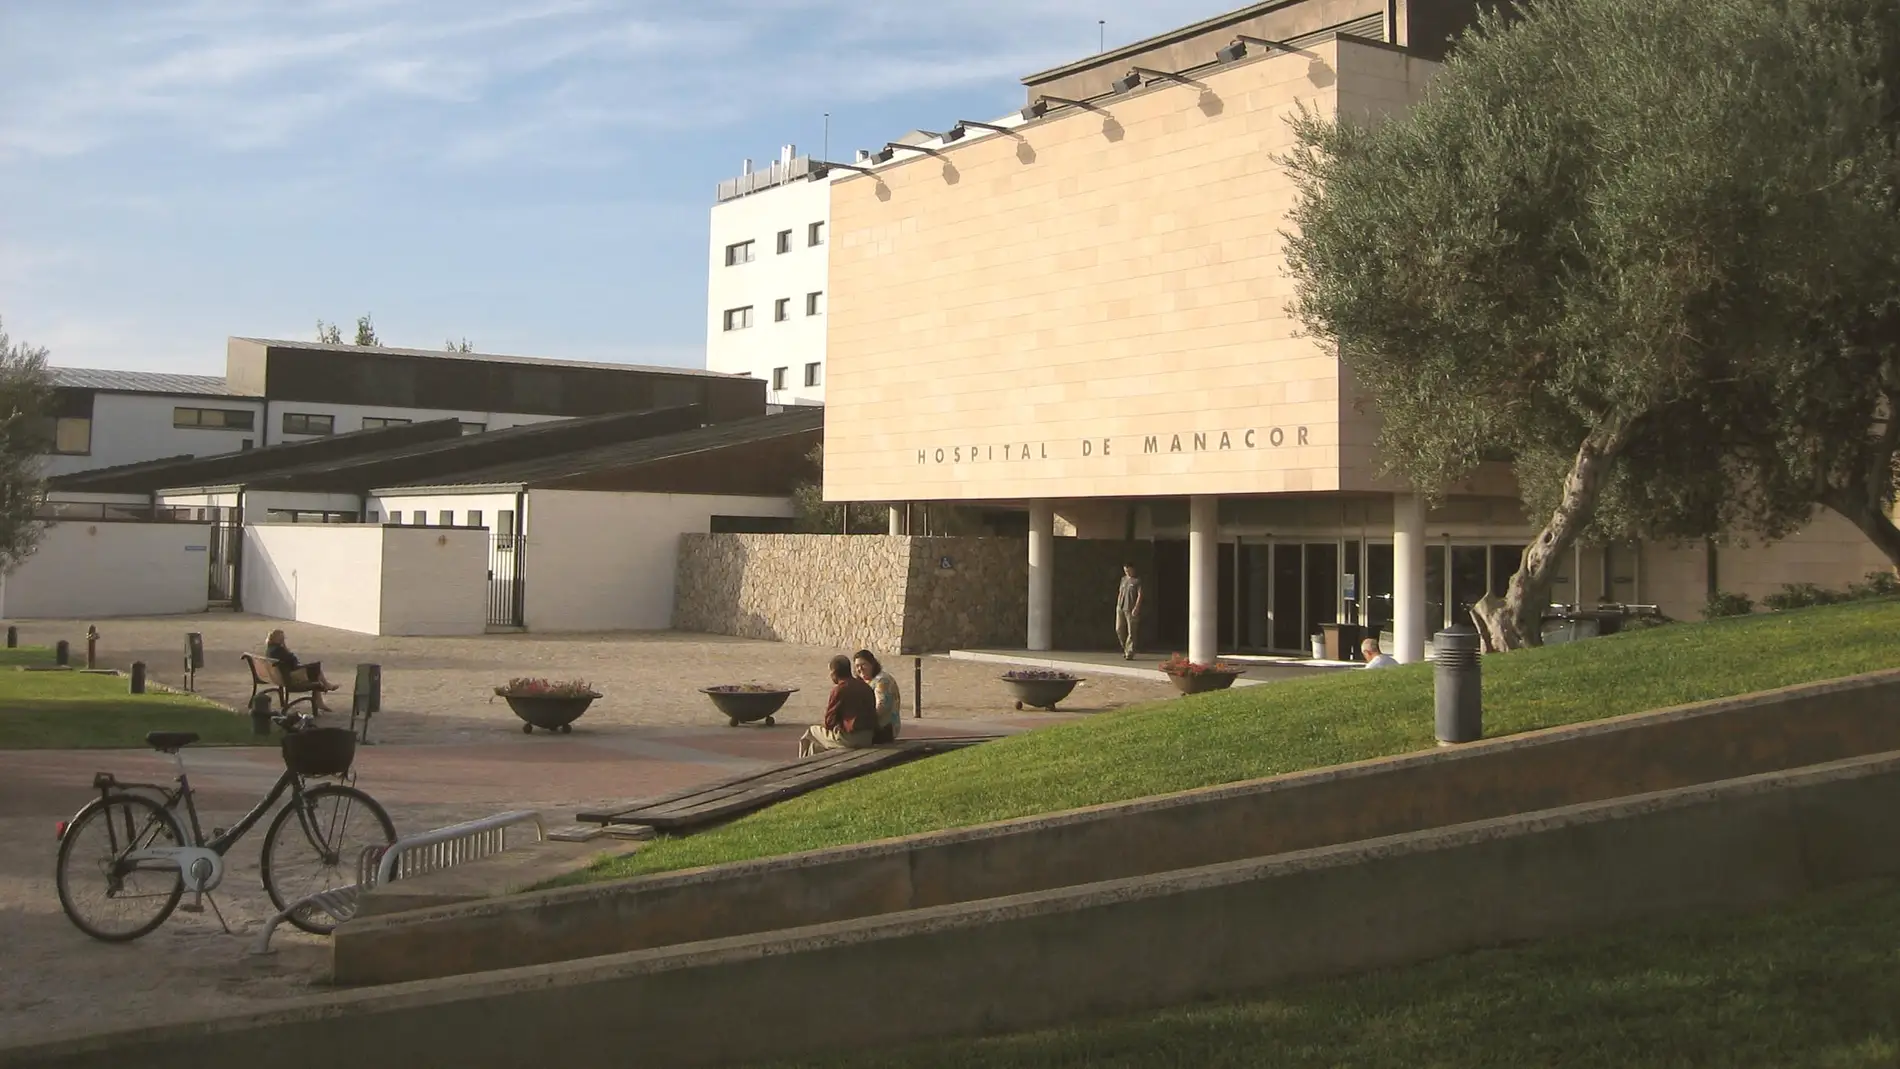 Hospital de Manacor (Mallorca)